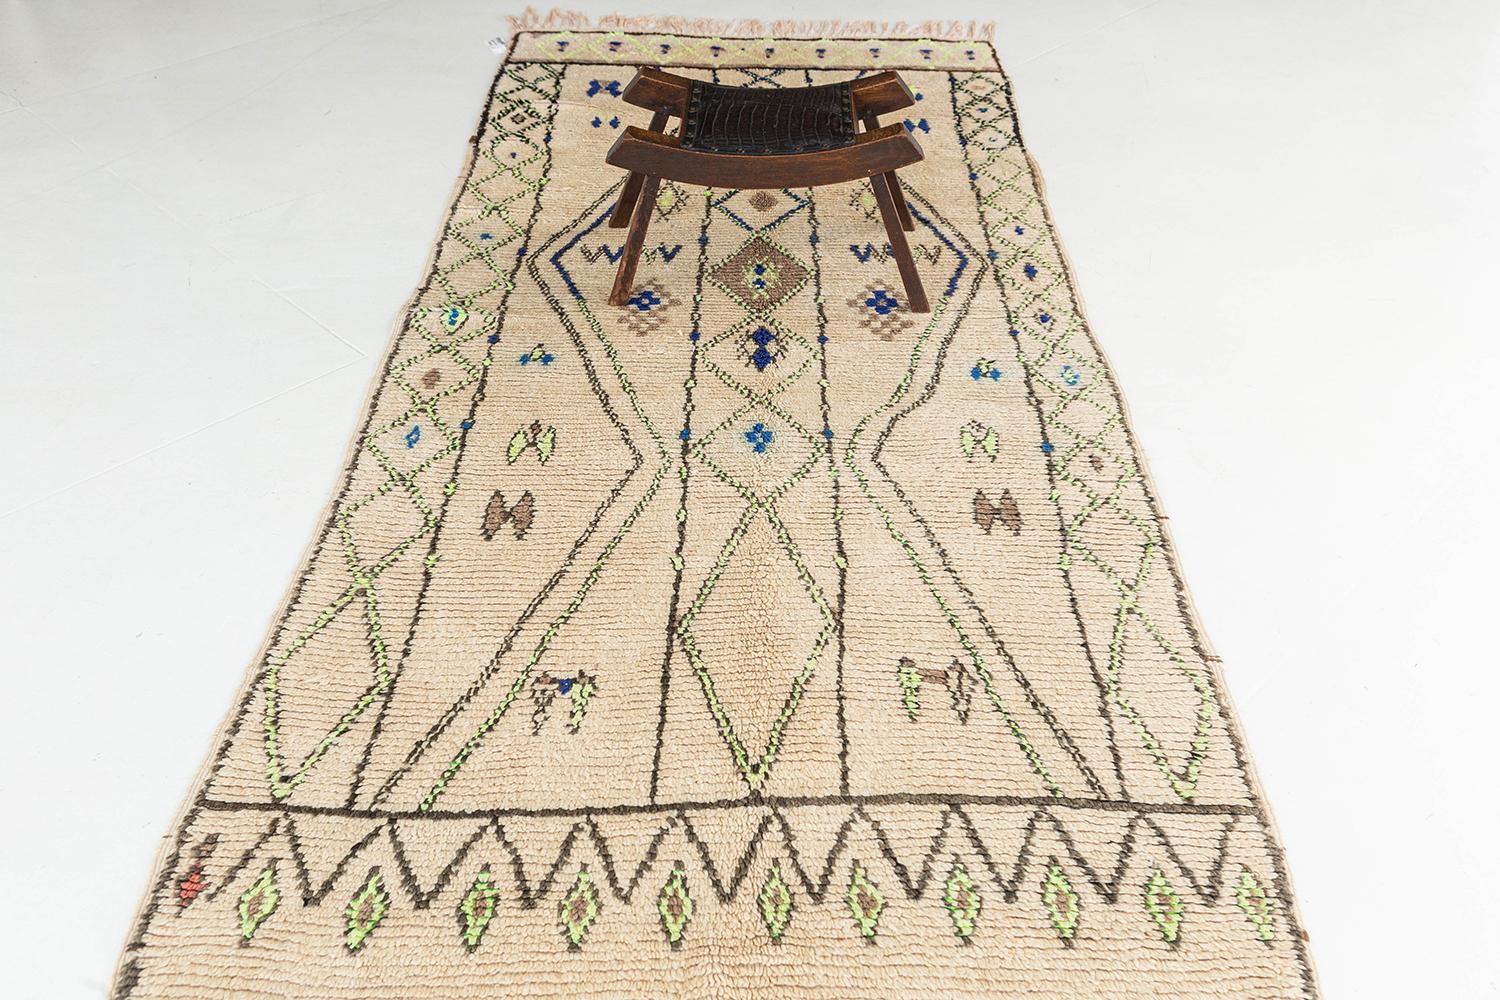 Ein faszinierender marokkanischer Berberteppich des Azilal-Stammes, der auf dem cremefarbenen Feld eine Vielzahl von kunstvollen symmetrischen Motiven zeigt. Dieser Teppich weist verschiedene symbolische Stammeselemente auf, die sorgfältig in das